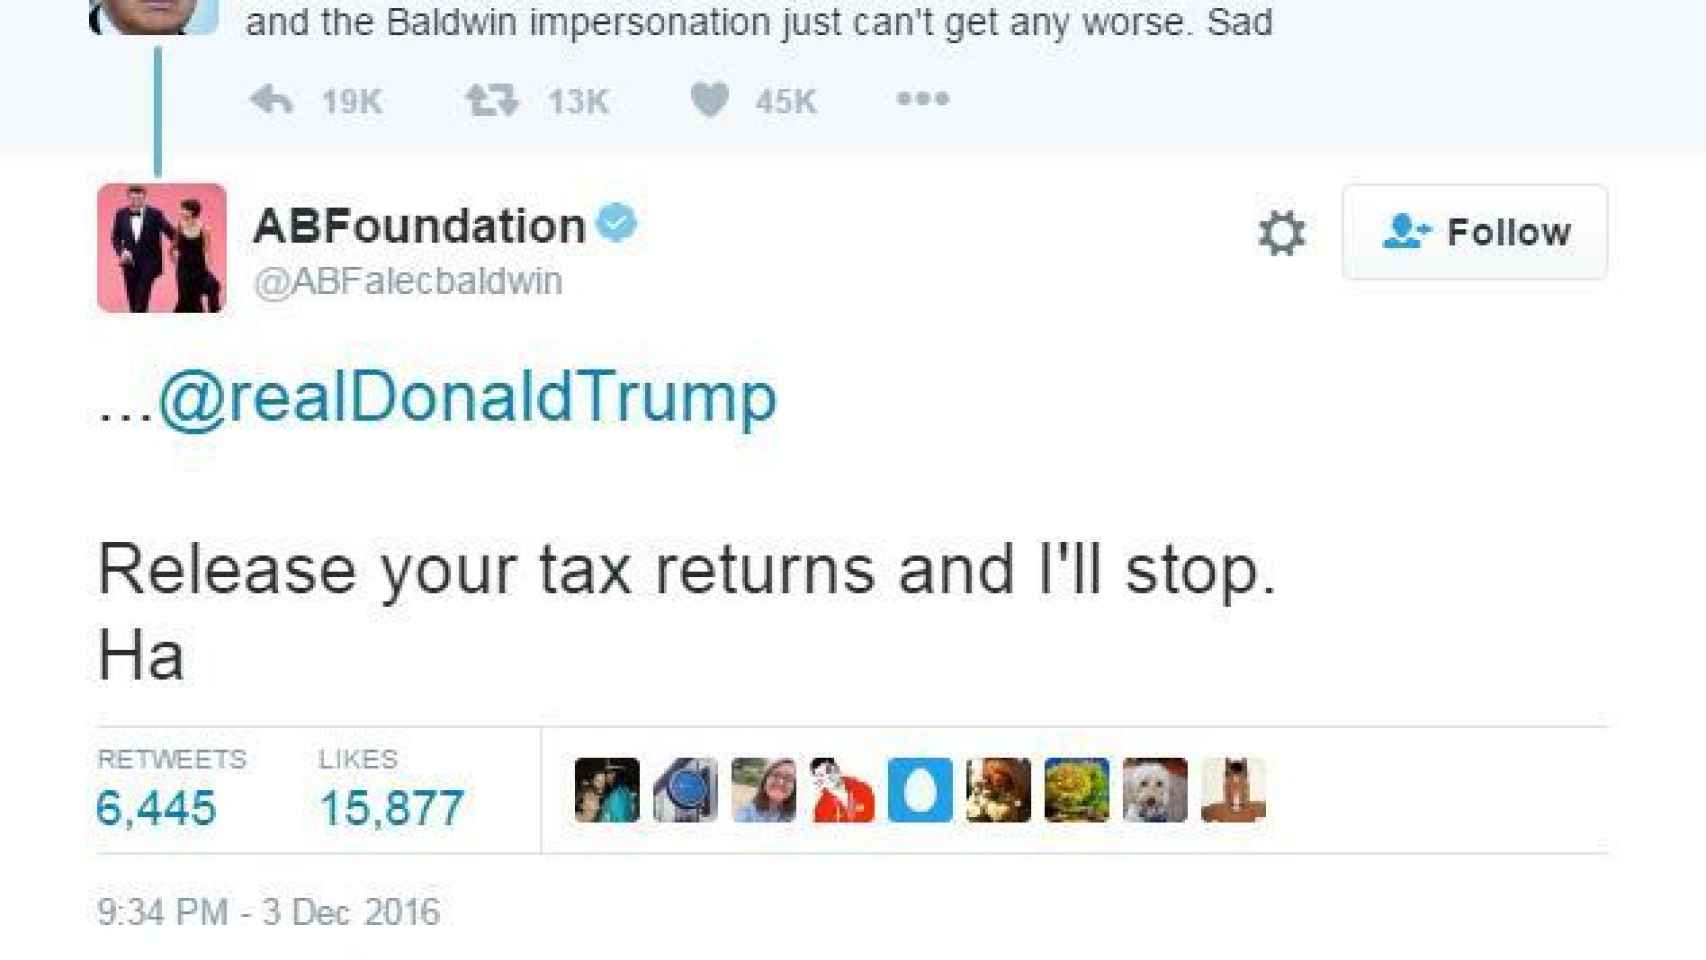 Intercambio de tuits entre Trump y Baldwin